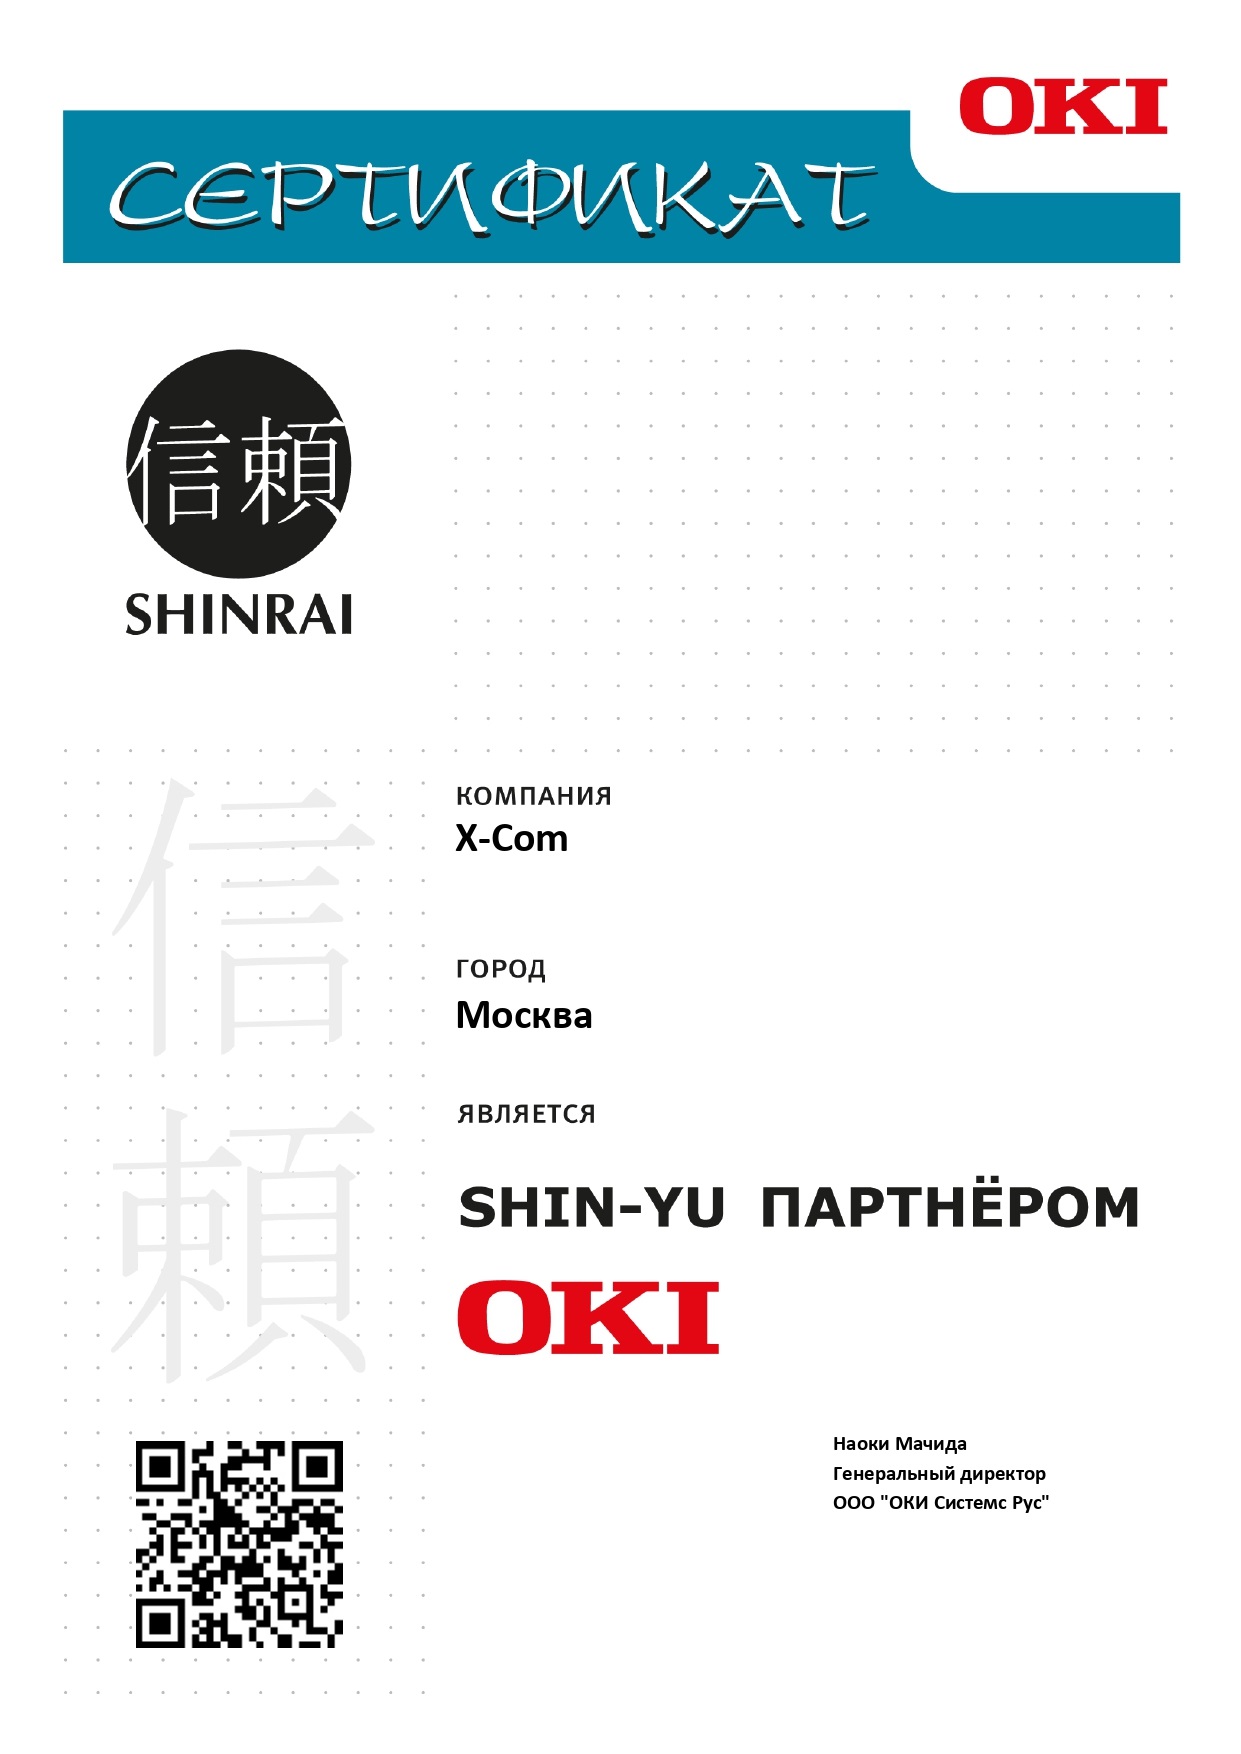 X-Com подтвердила партнерский статус OKI